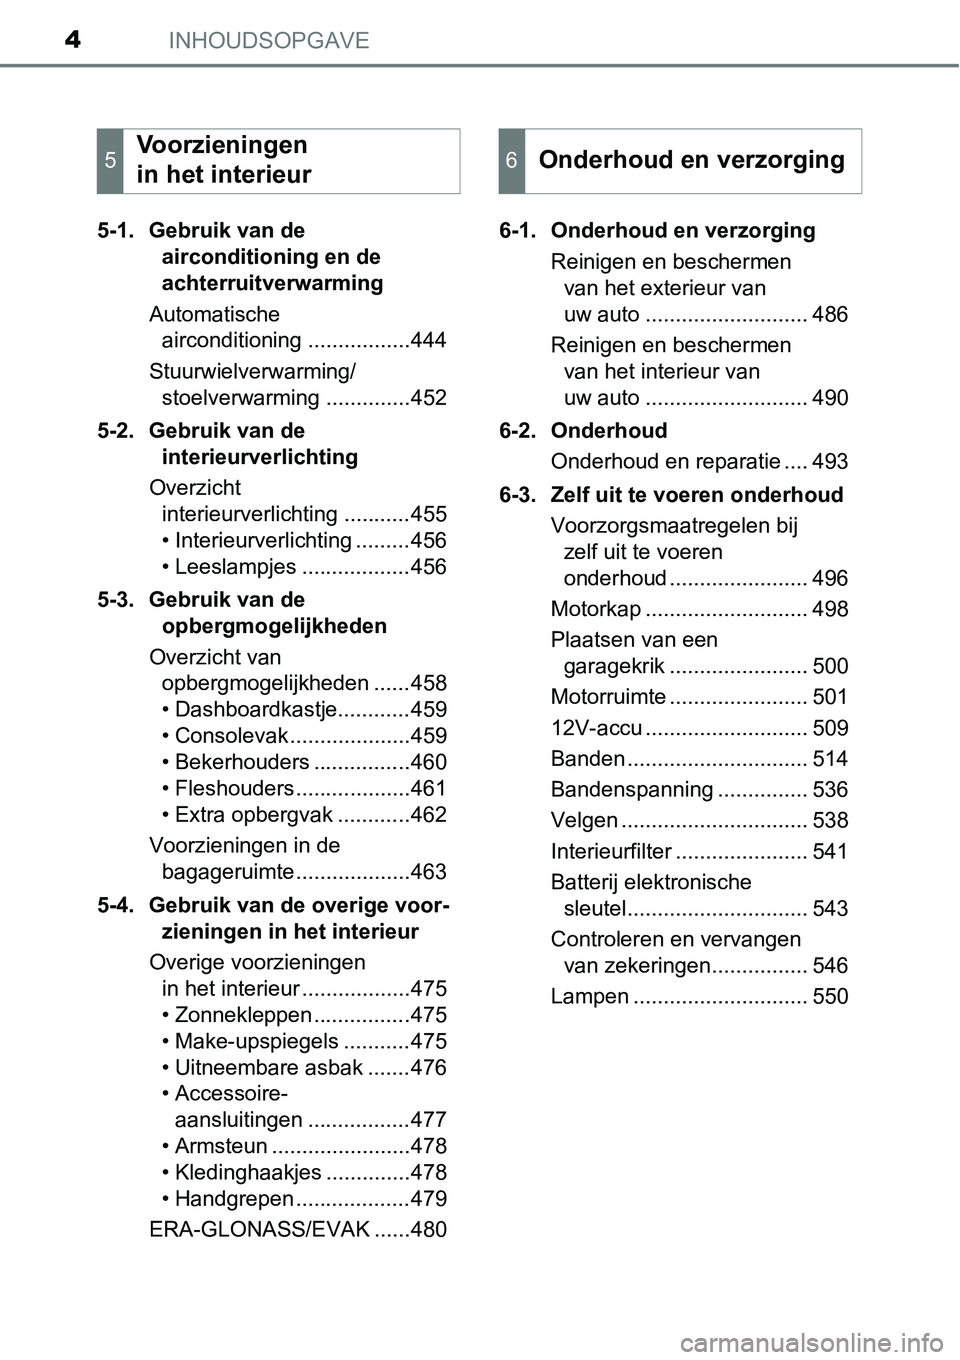 TOYOTA RAV4 HYBRID 2018  Instructieboekje (in Dutch) INHOUDSOPGAVE4
5-1. Gebruik van de airconditioning en de 
achterruitverwarming
Automatische  airconditioning .................444
Stuurwielverwarming/ stoelverwarming ..............452
5-2. Gebruik va